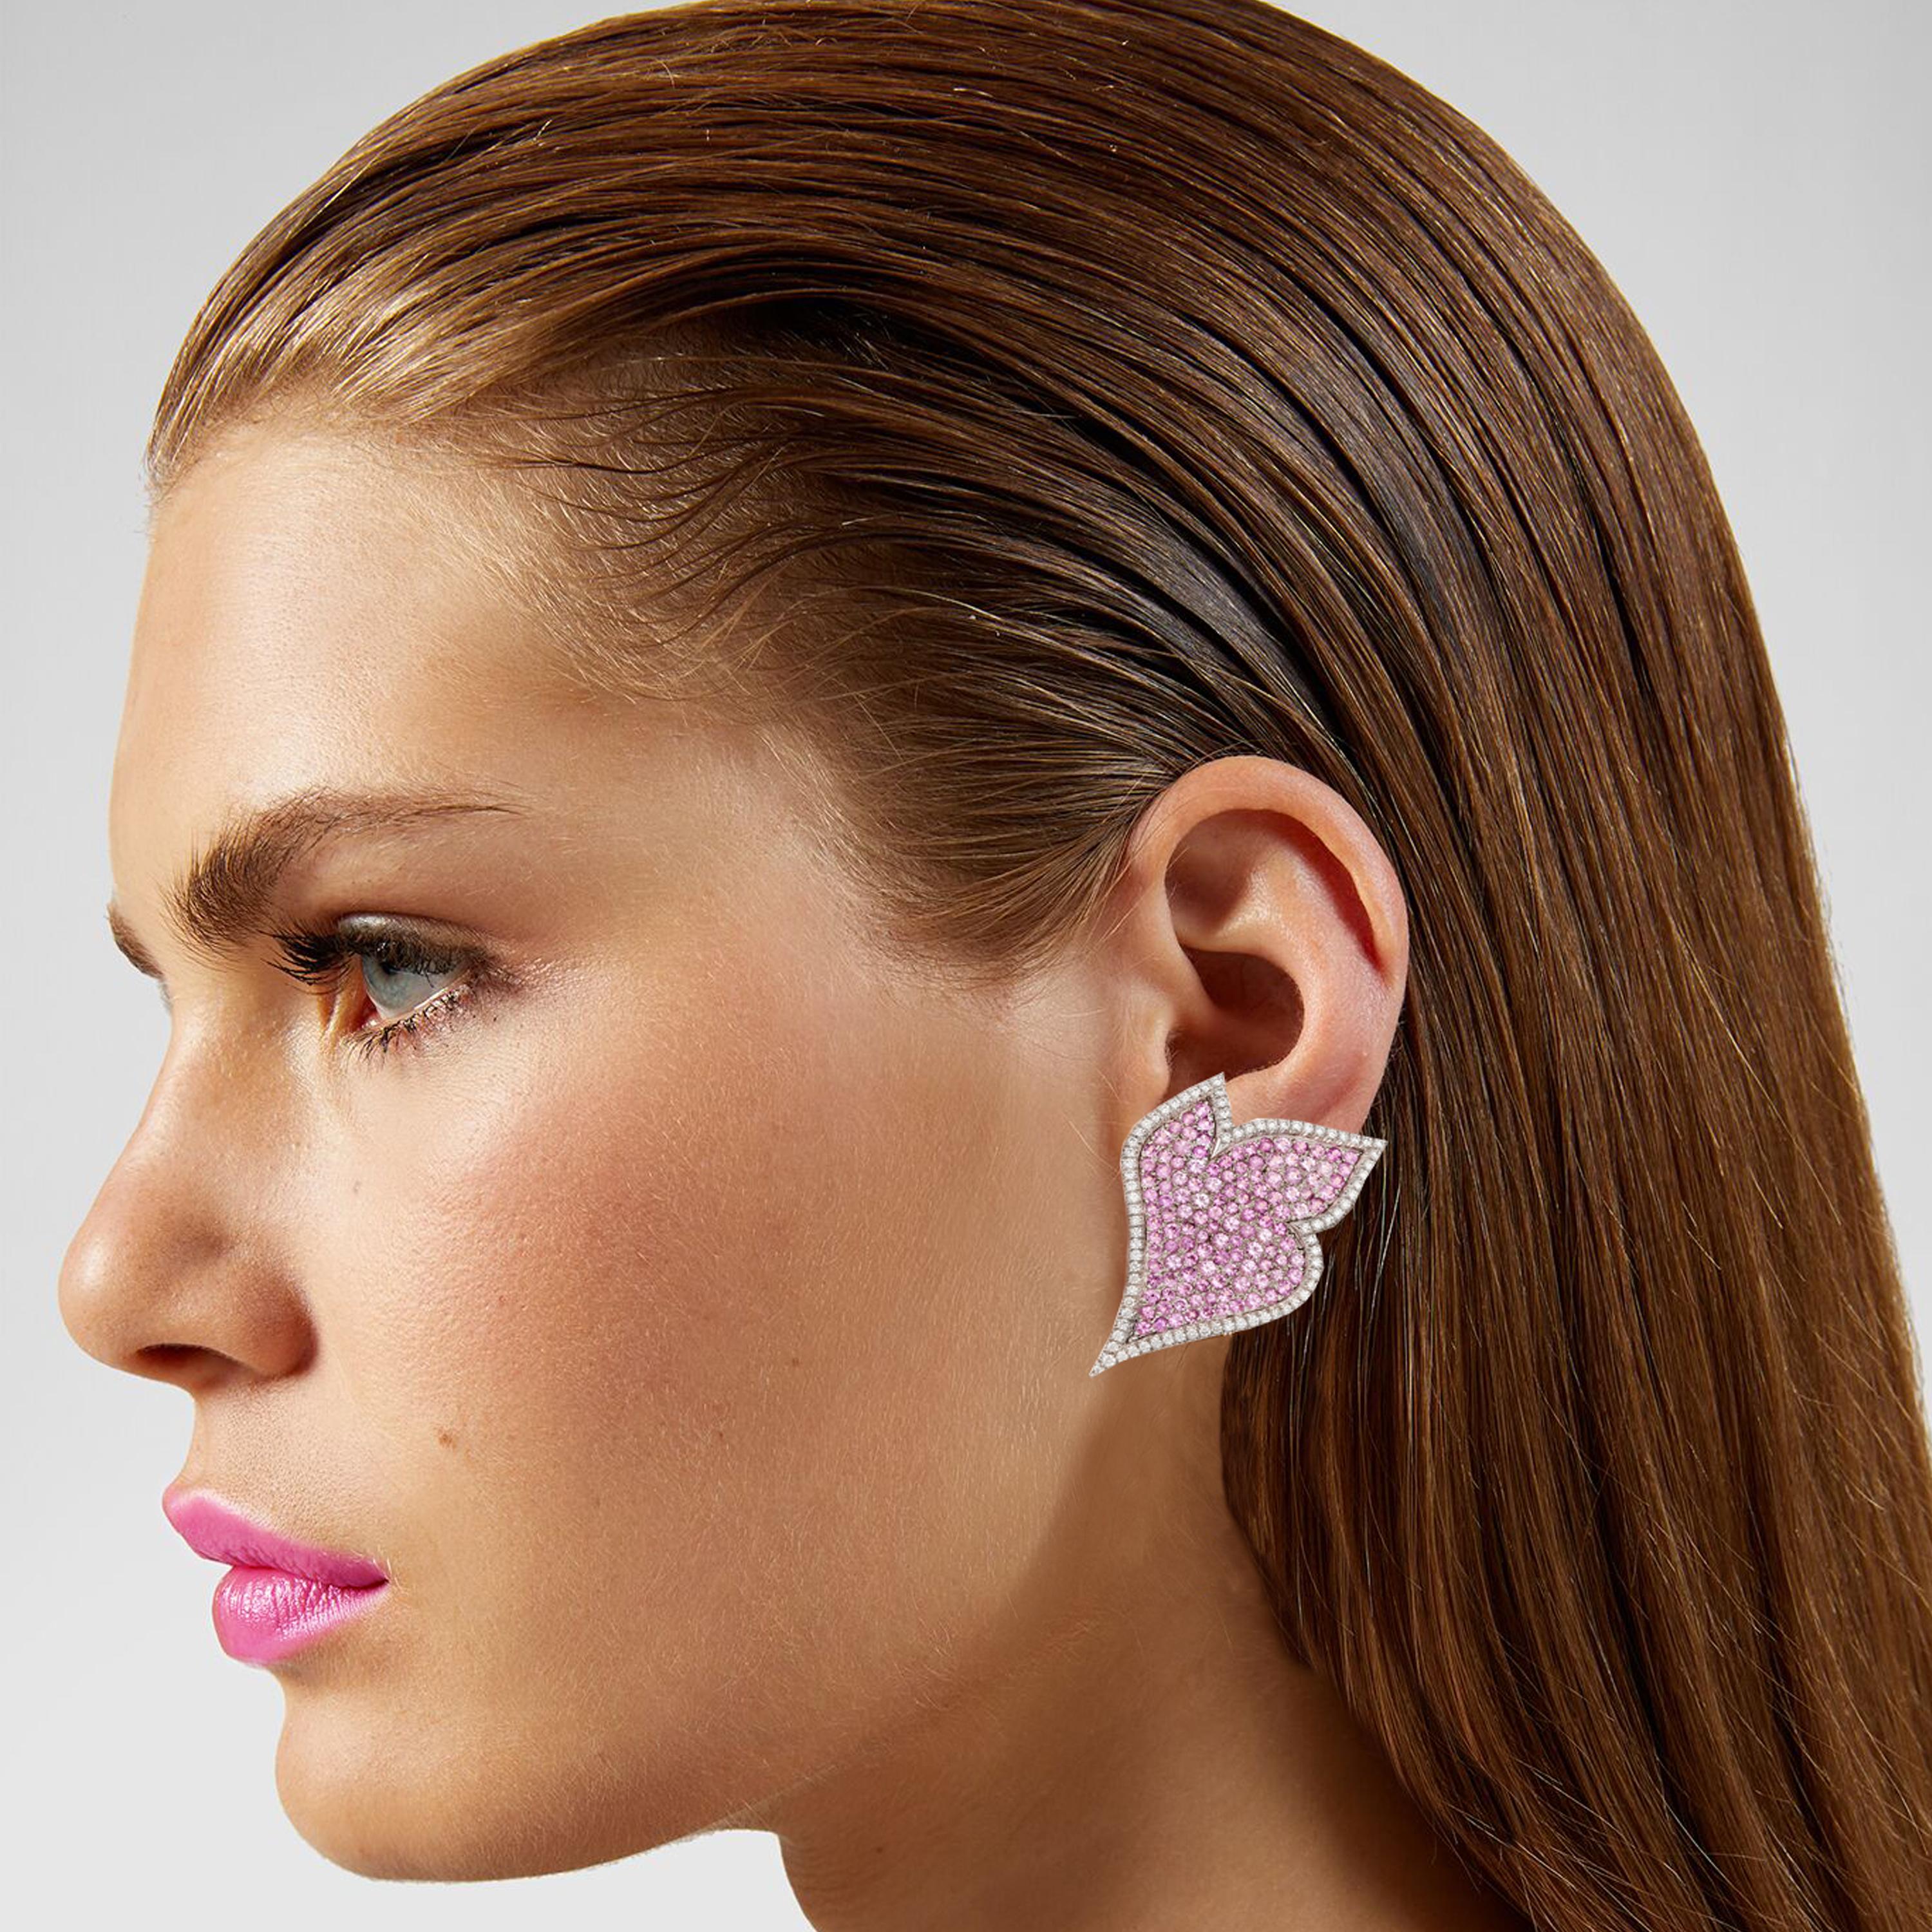 Diese feenhaften Ohrringe werden in Italien von erfahrenen italienischen Goldschmieden von Hand gefertigt. Die Rückseite der Ohrringe ist genauso schön wie die Vorderseite, da sie mit der 